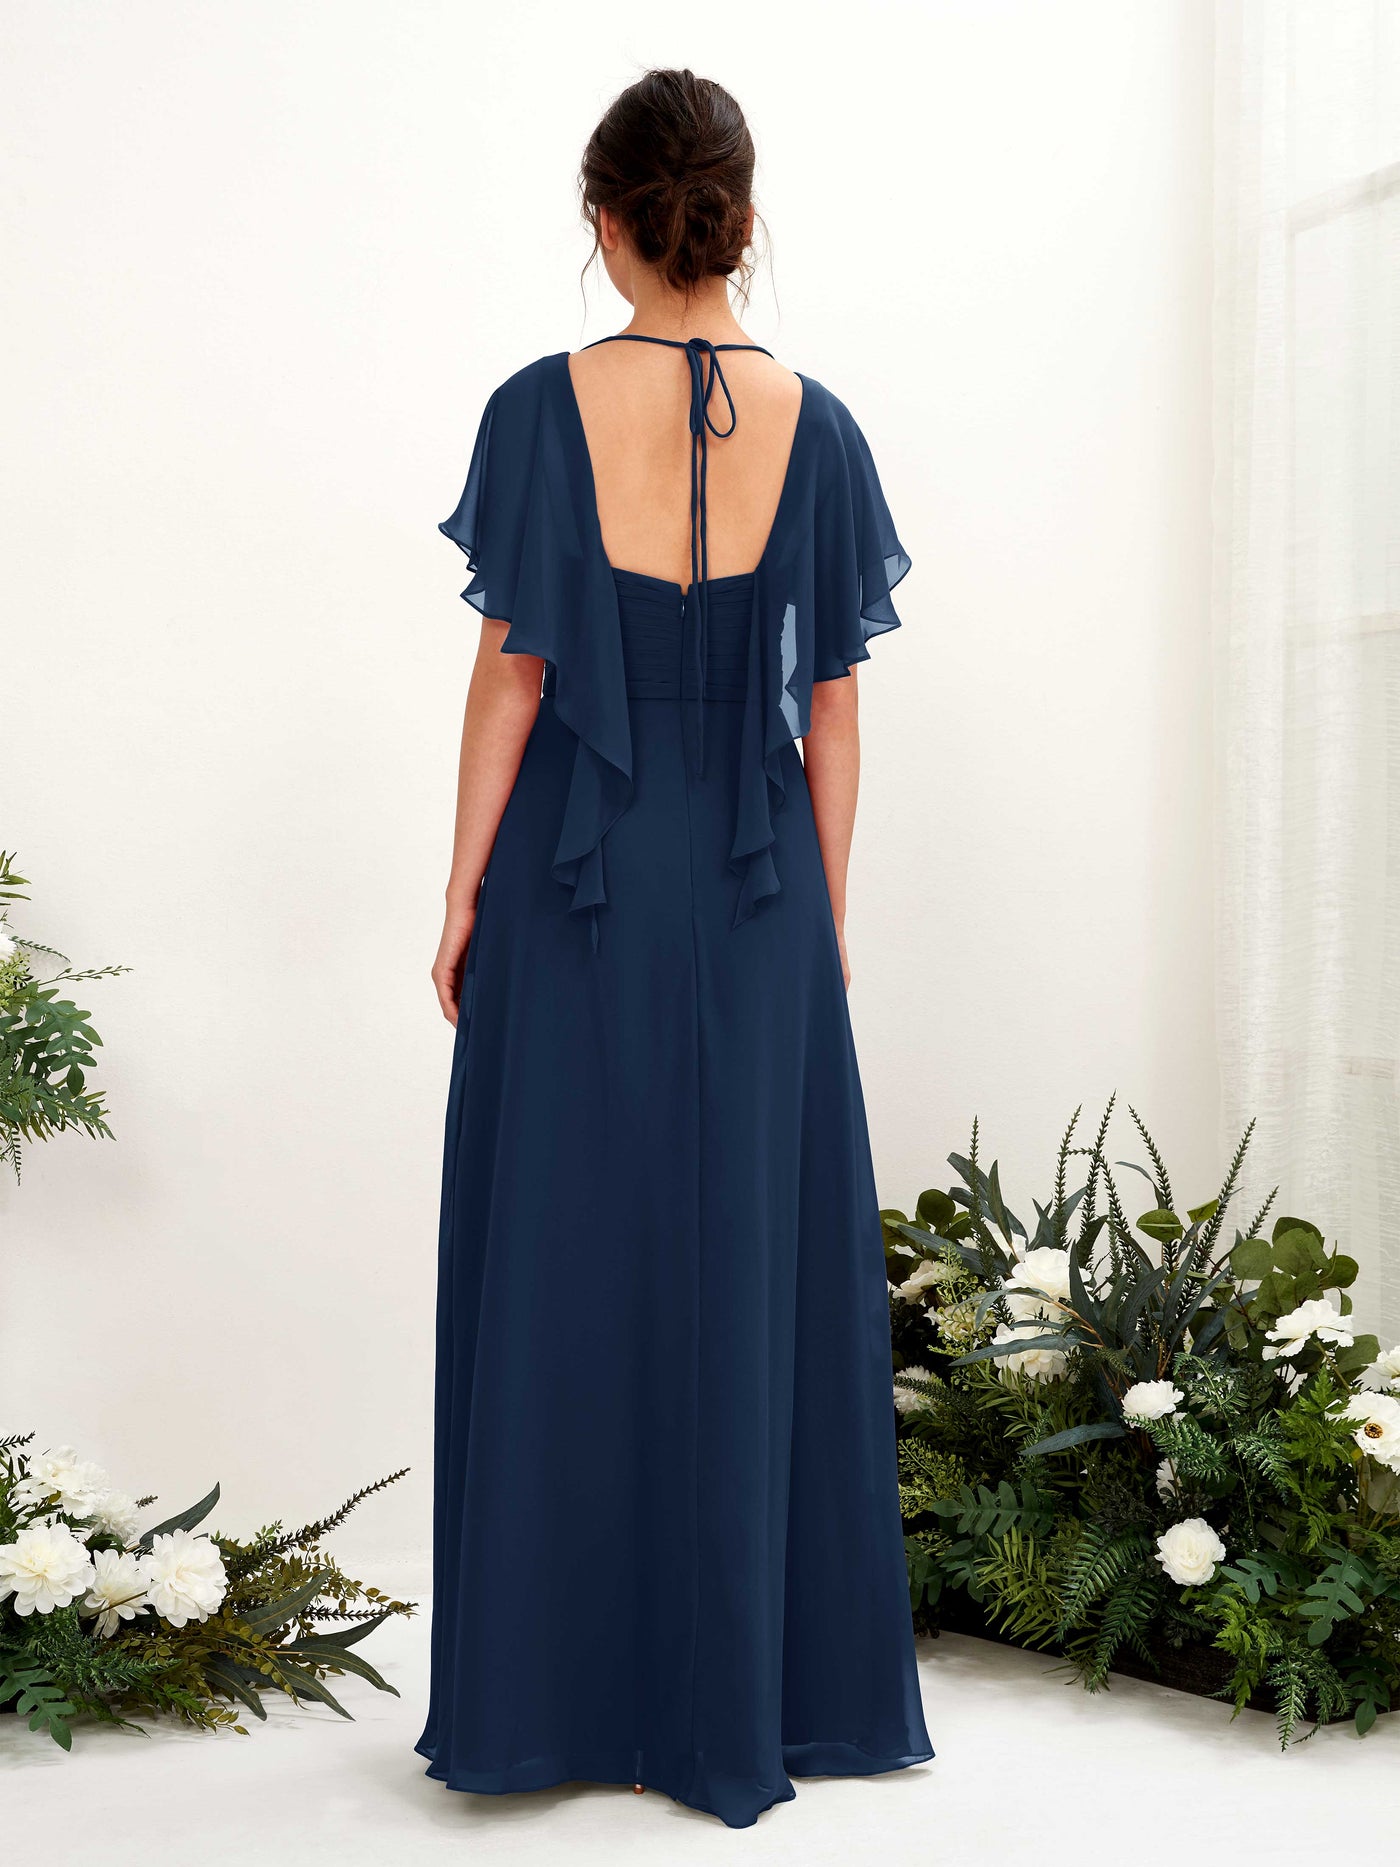 V-neck Short Sleeves Chiffon Bridesmaid Dress (81226113)#color_navy